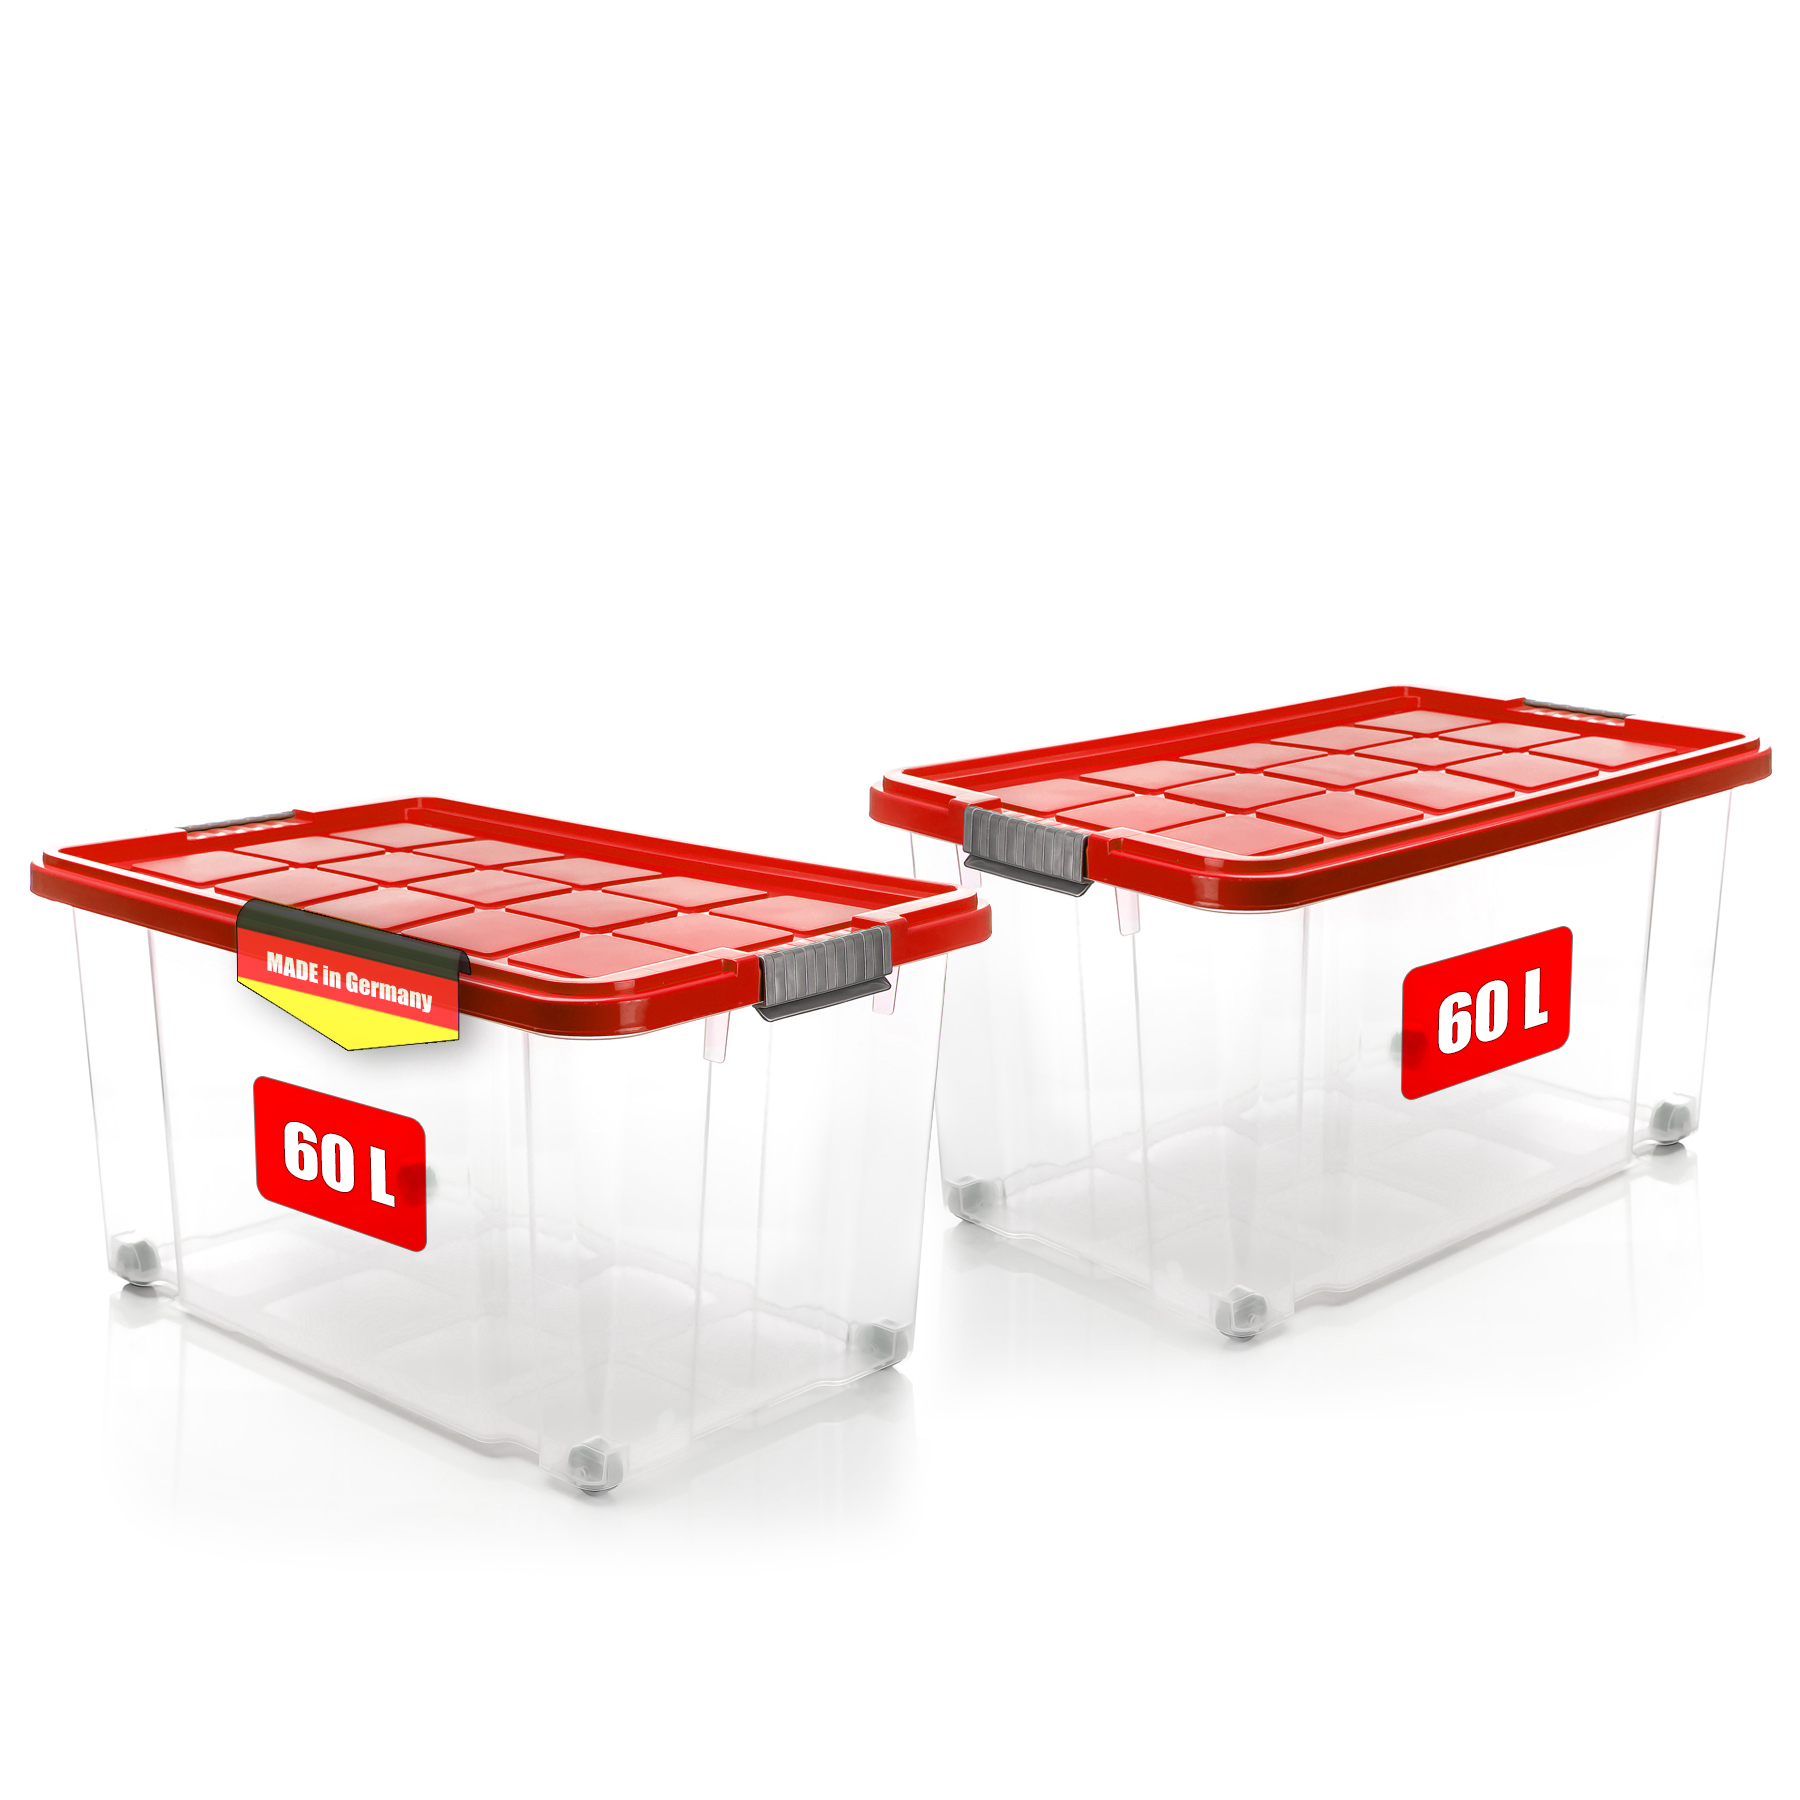 Juskys Aufbewahrungsbox mit Deckel - 4er Set Kunststoff Boxen 60l